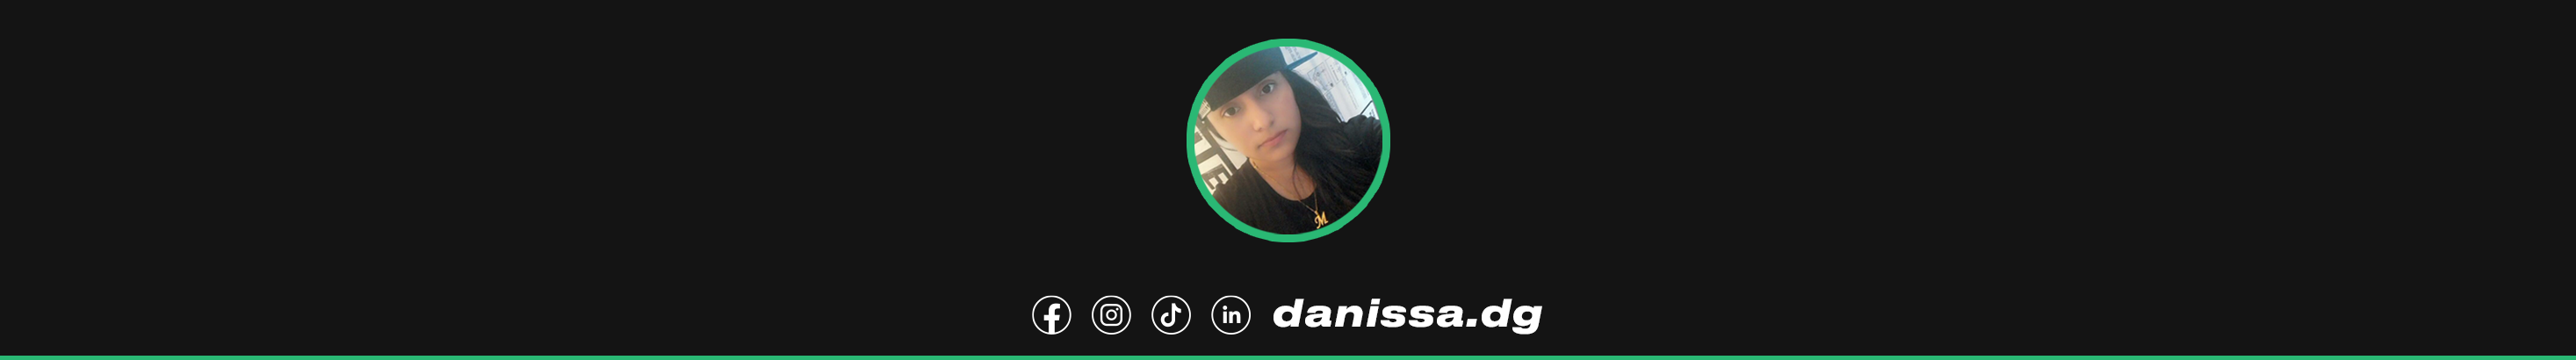 Danissa design's profile banner